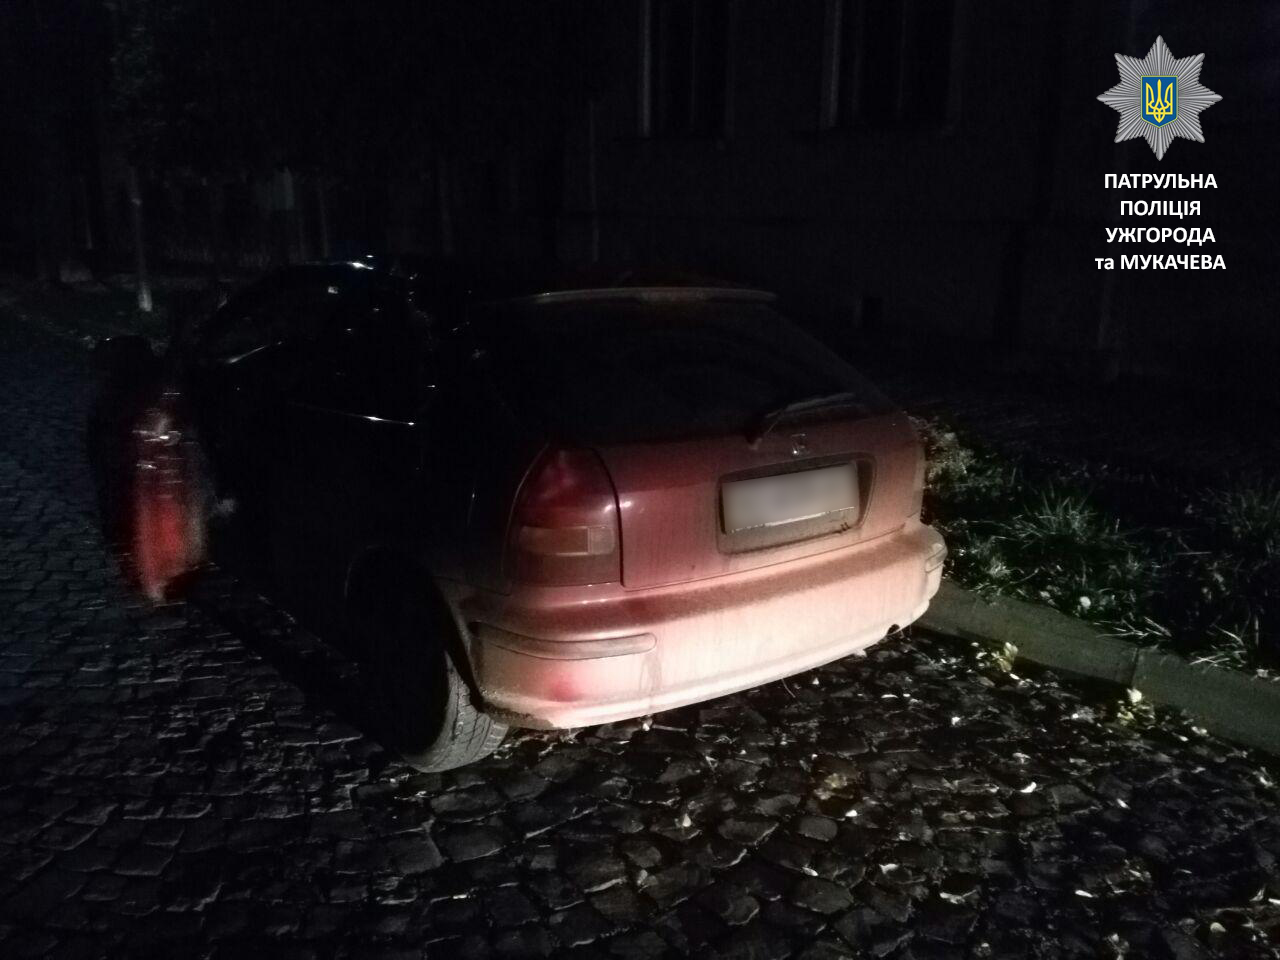 Cьогодні під ранок мукачівські патрульні зупинили автомобіль Honda Сivic за порушення ПДР. Подія трапилася близько 5:30 на вулиці Ярослава Мудрого.